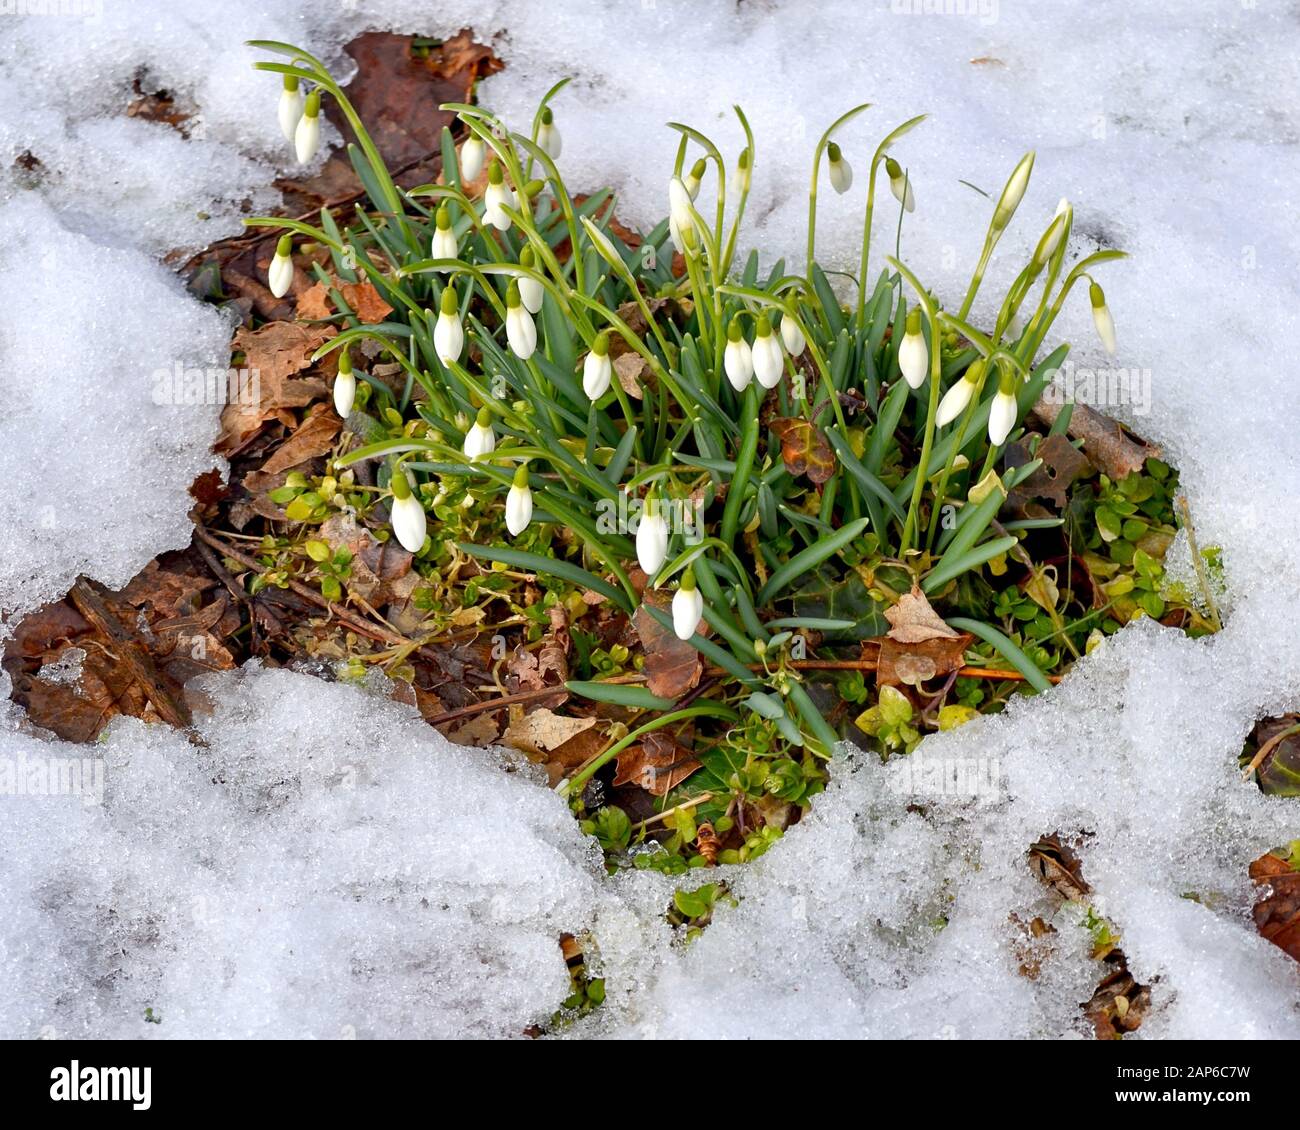 Weiße, schneebedeckte Blumen, die in einem von Schnee umgebenen Flecken offenen Boden blühen, sind ein sicheres Zeichen dafür, dass der Frühling auf dem Weg ist. (Galanthus nivalis) Stockfoto